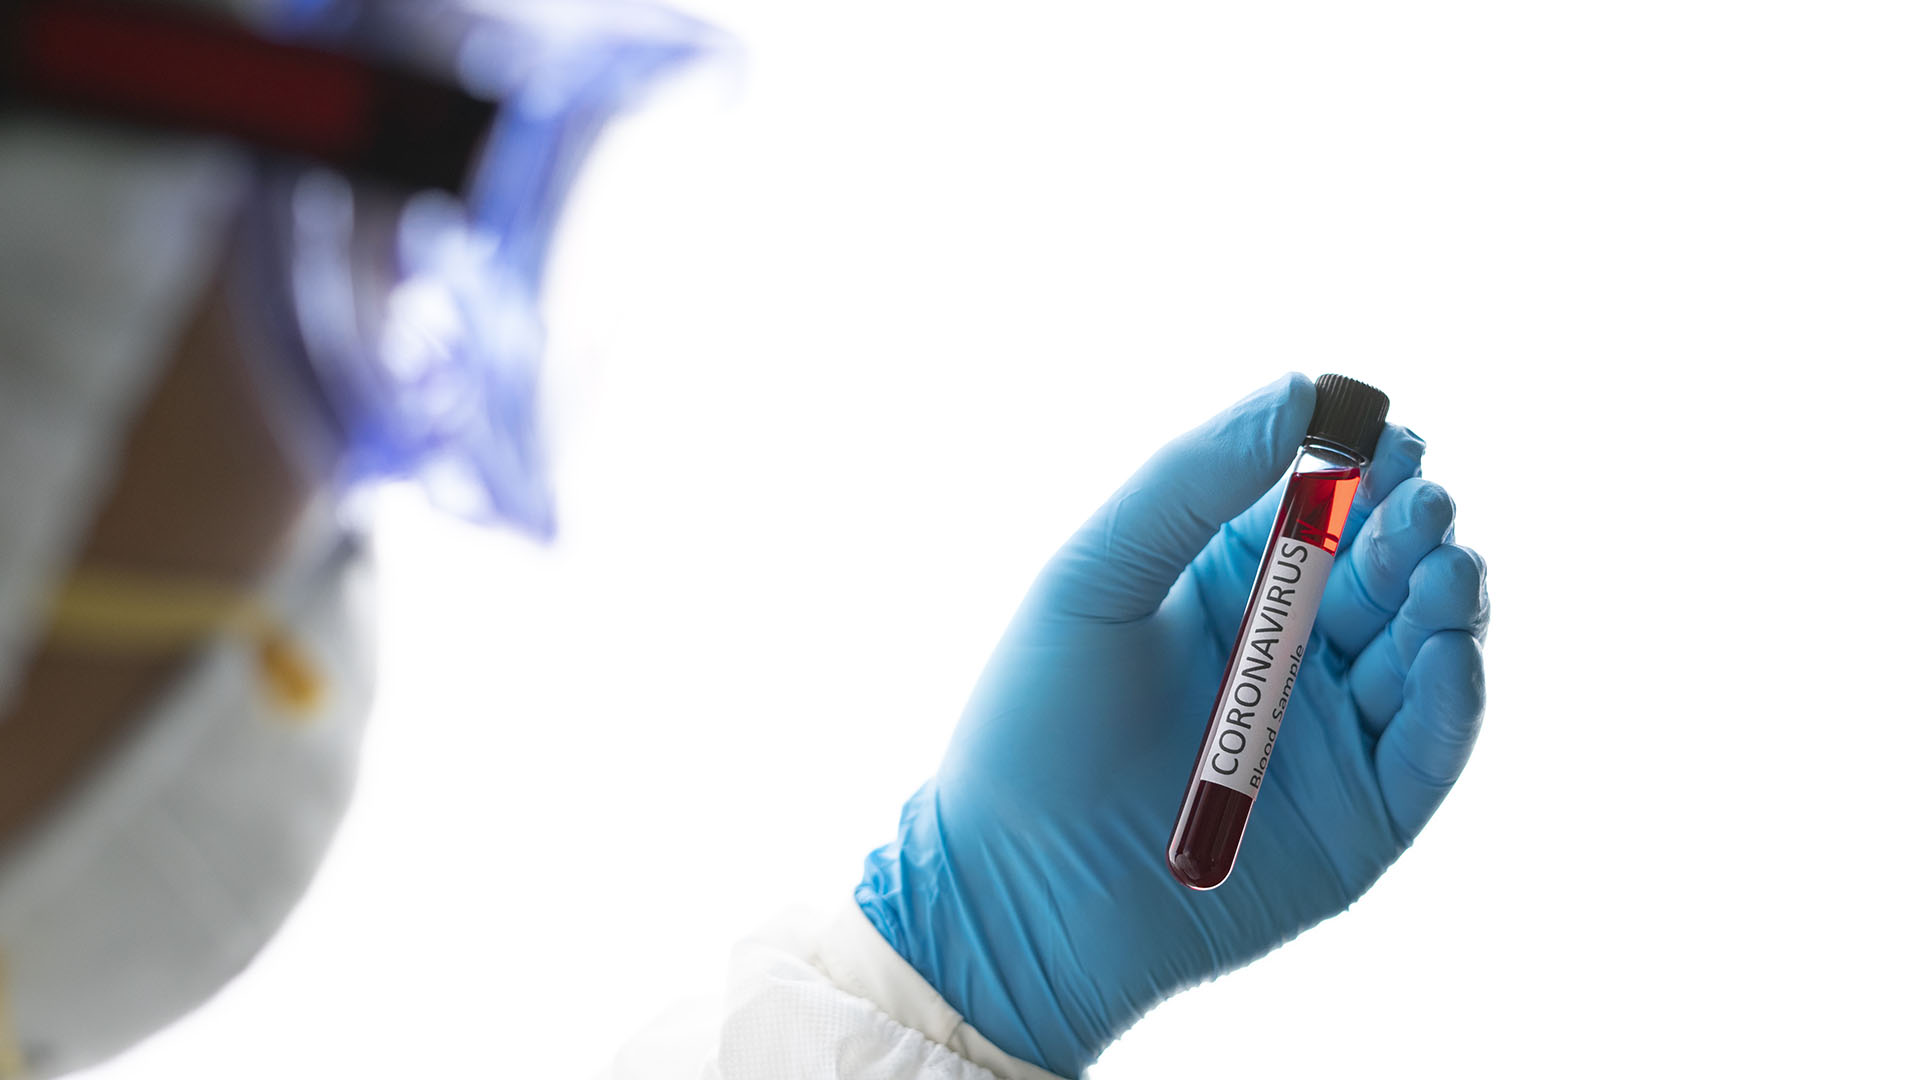 Les experts ont souligné qu'après la vaccination contre le COVID, les anticorps détectés dans le sang protègent contre les affections graves, mais ceux trouvés dans le nez peuvent prévenir l'infection / (Getty Images)